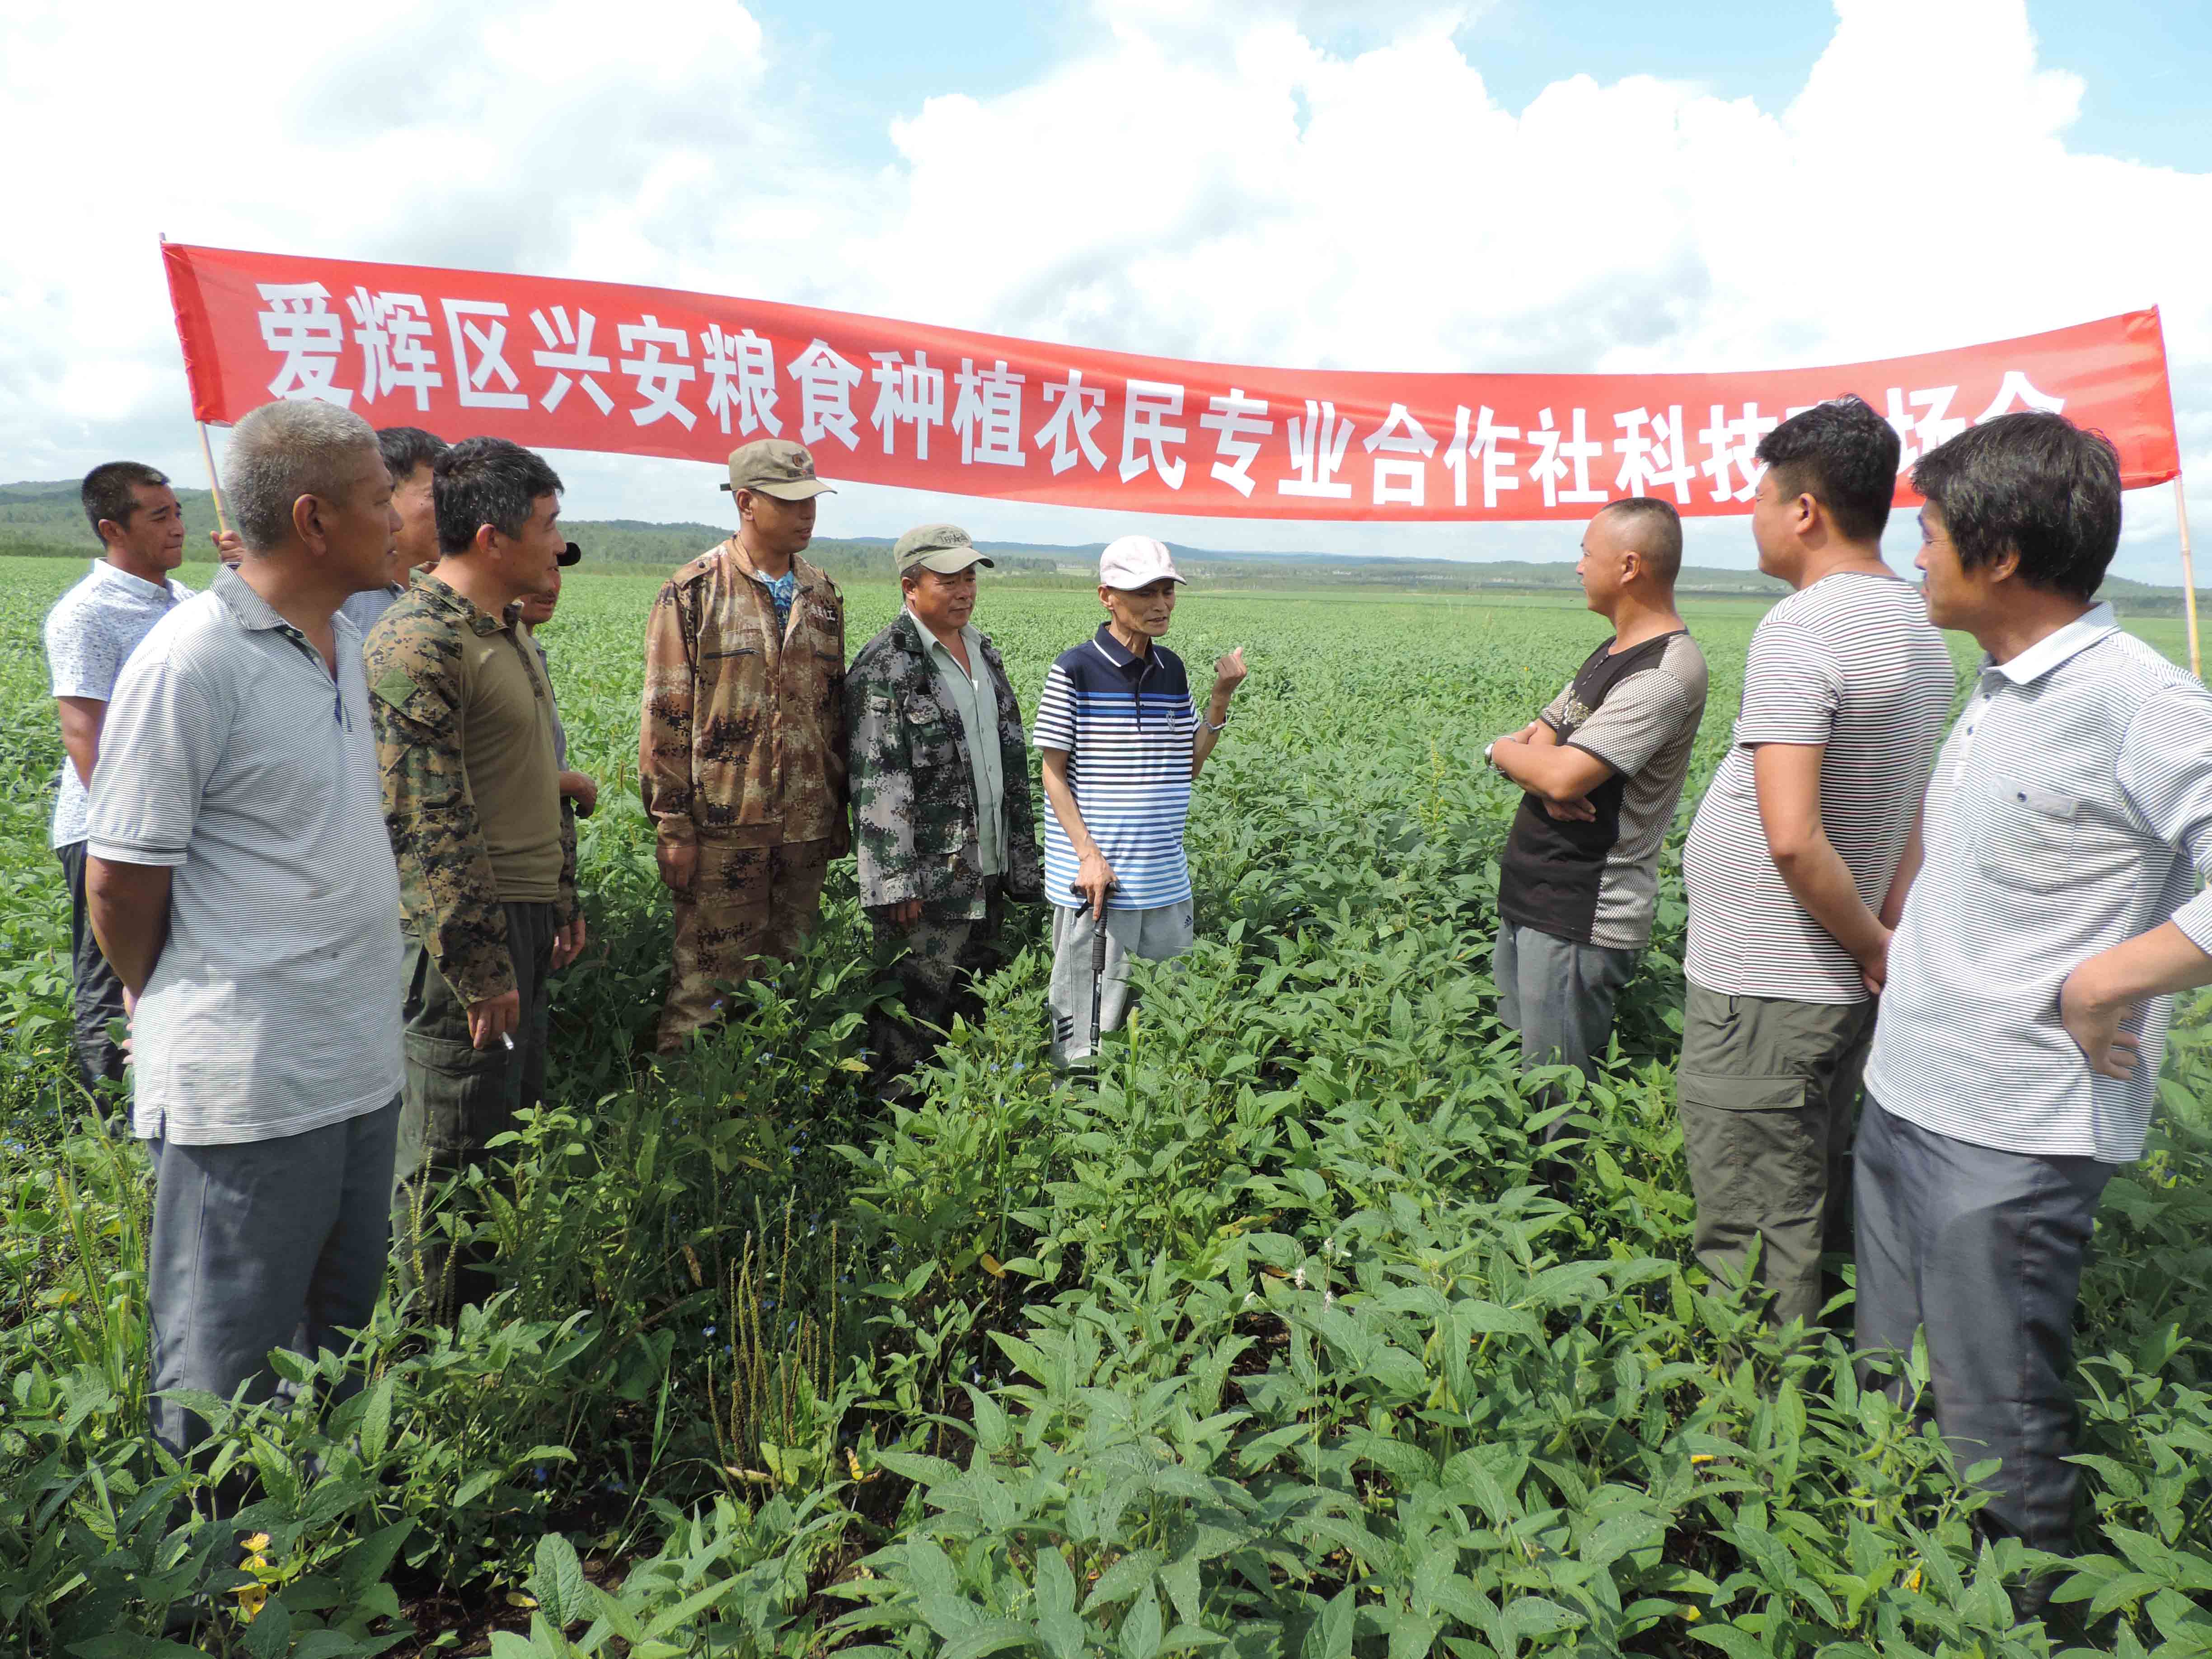 爱辉区社区教育学院依托扶持的新型农民经营主体举行田间课堂活动